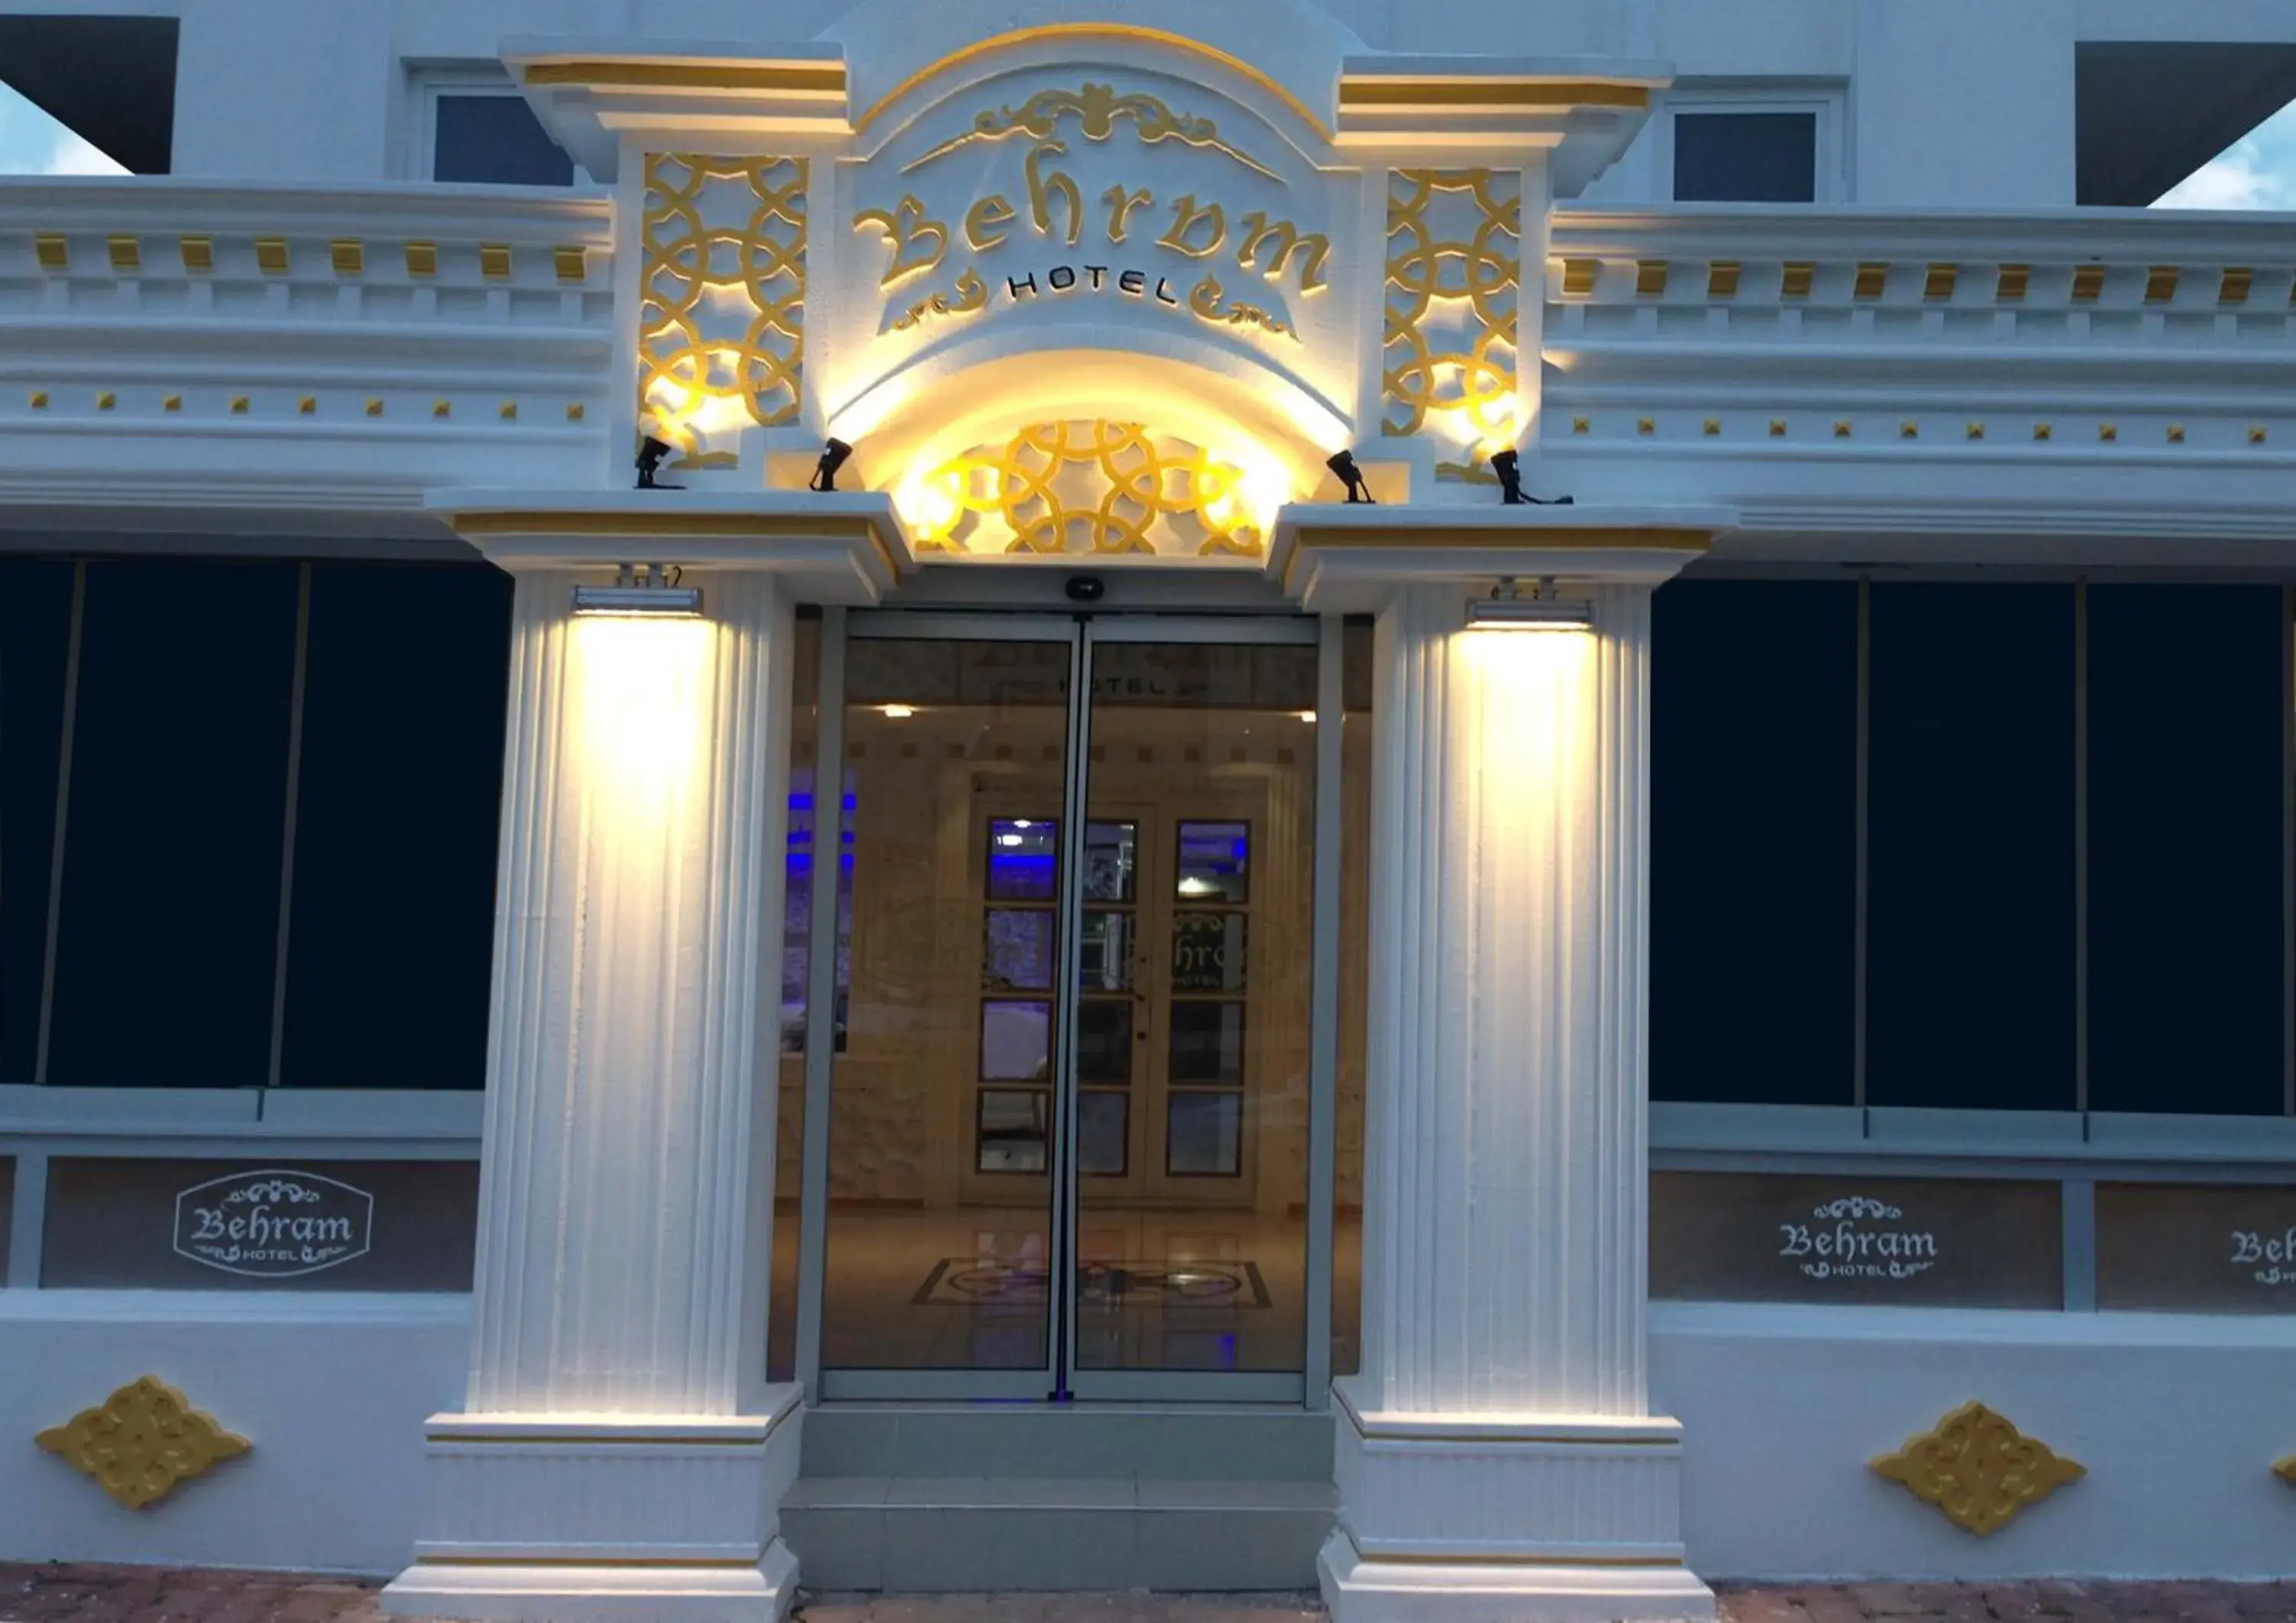 Facade/entrance in Behram Hotel